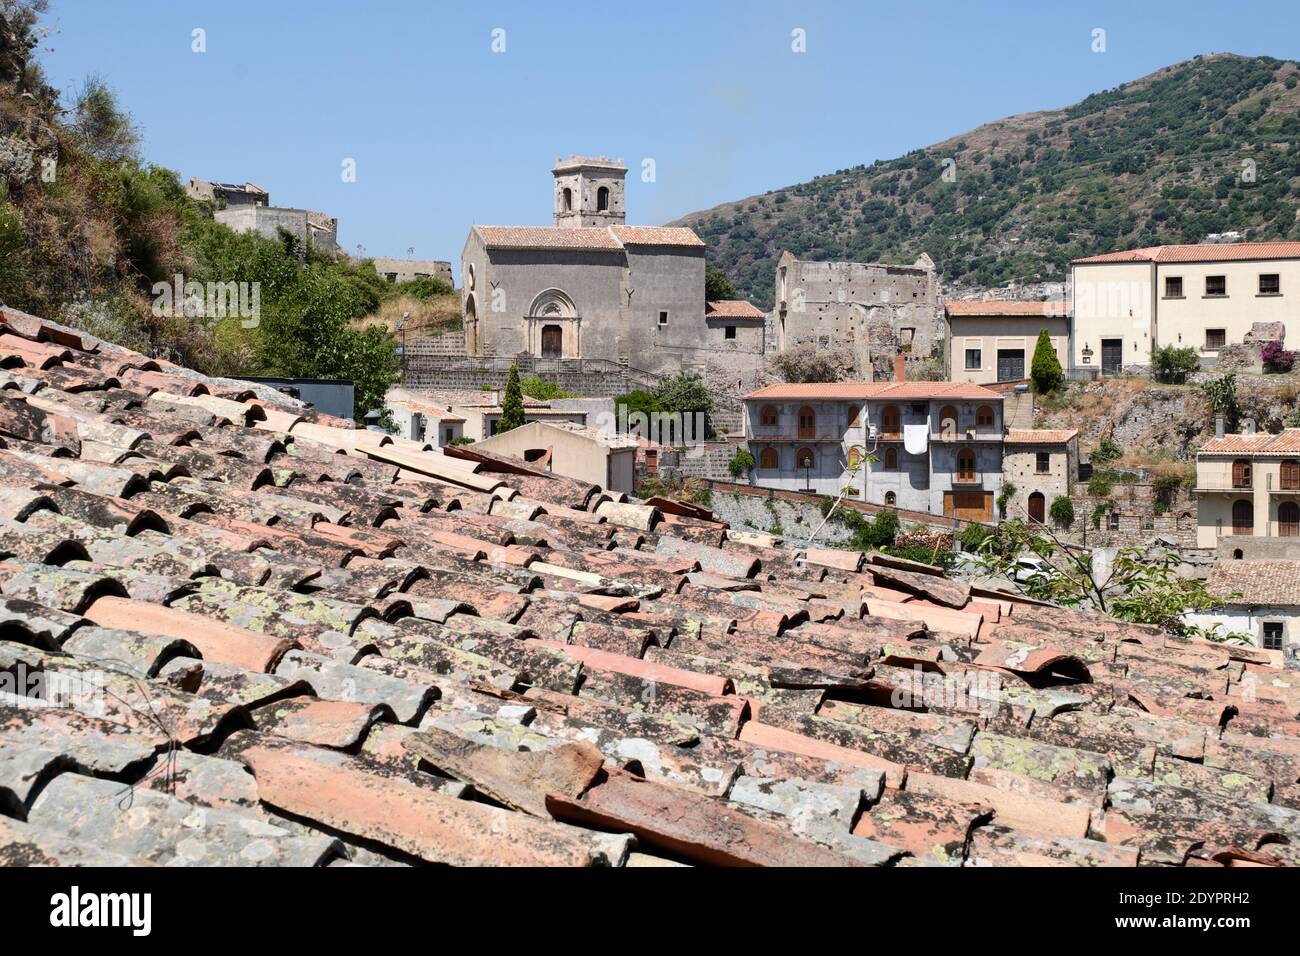 Tetti Tiles, Case e Chiesa del Villaggio montano di Savoca, Città di Sicilia ricca di testimonianze architettoniche Foto Stock